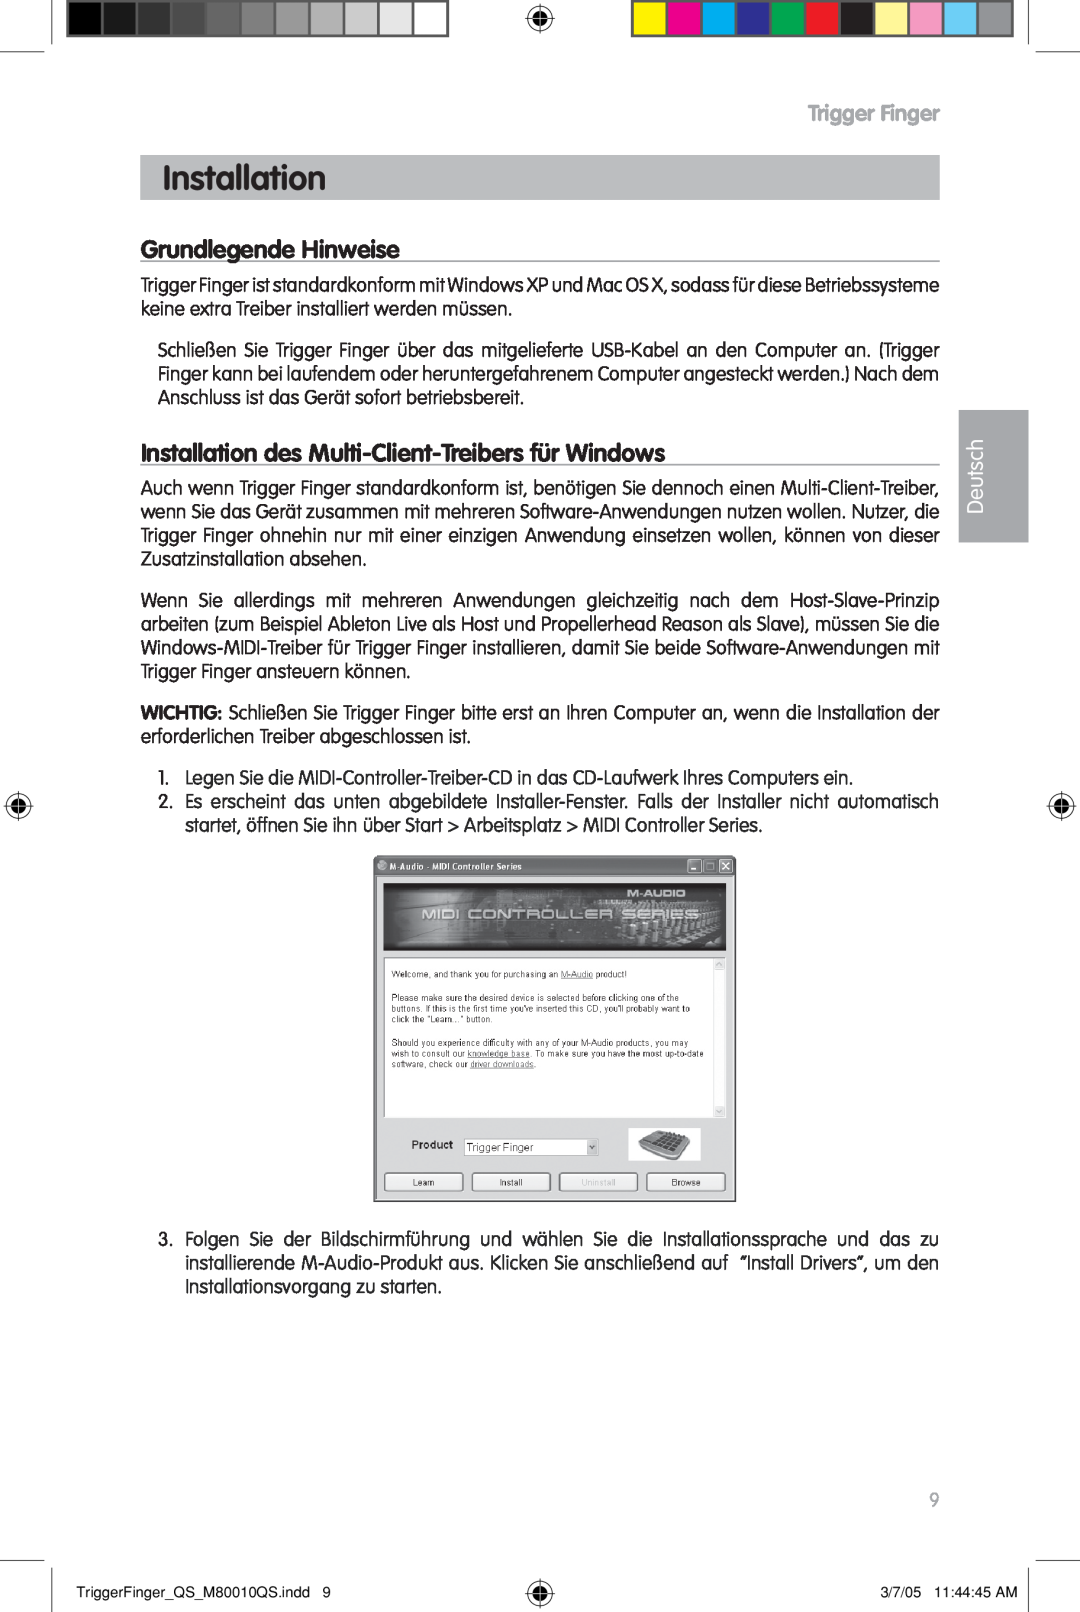 M-Audio QS_M80010QS Grundlegende Hinweise, Installation des Multi-Client-Treibersfür Windows, Deutsch, Trigger Finger 